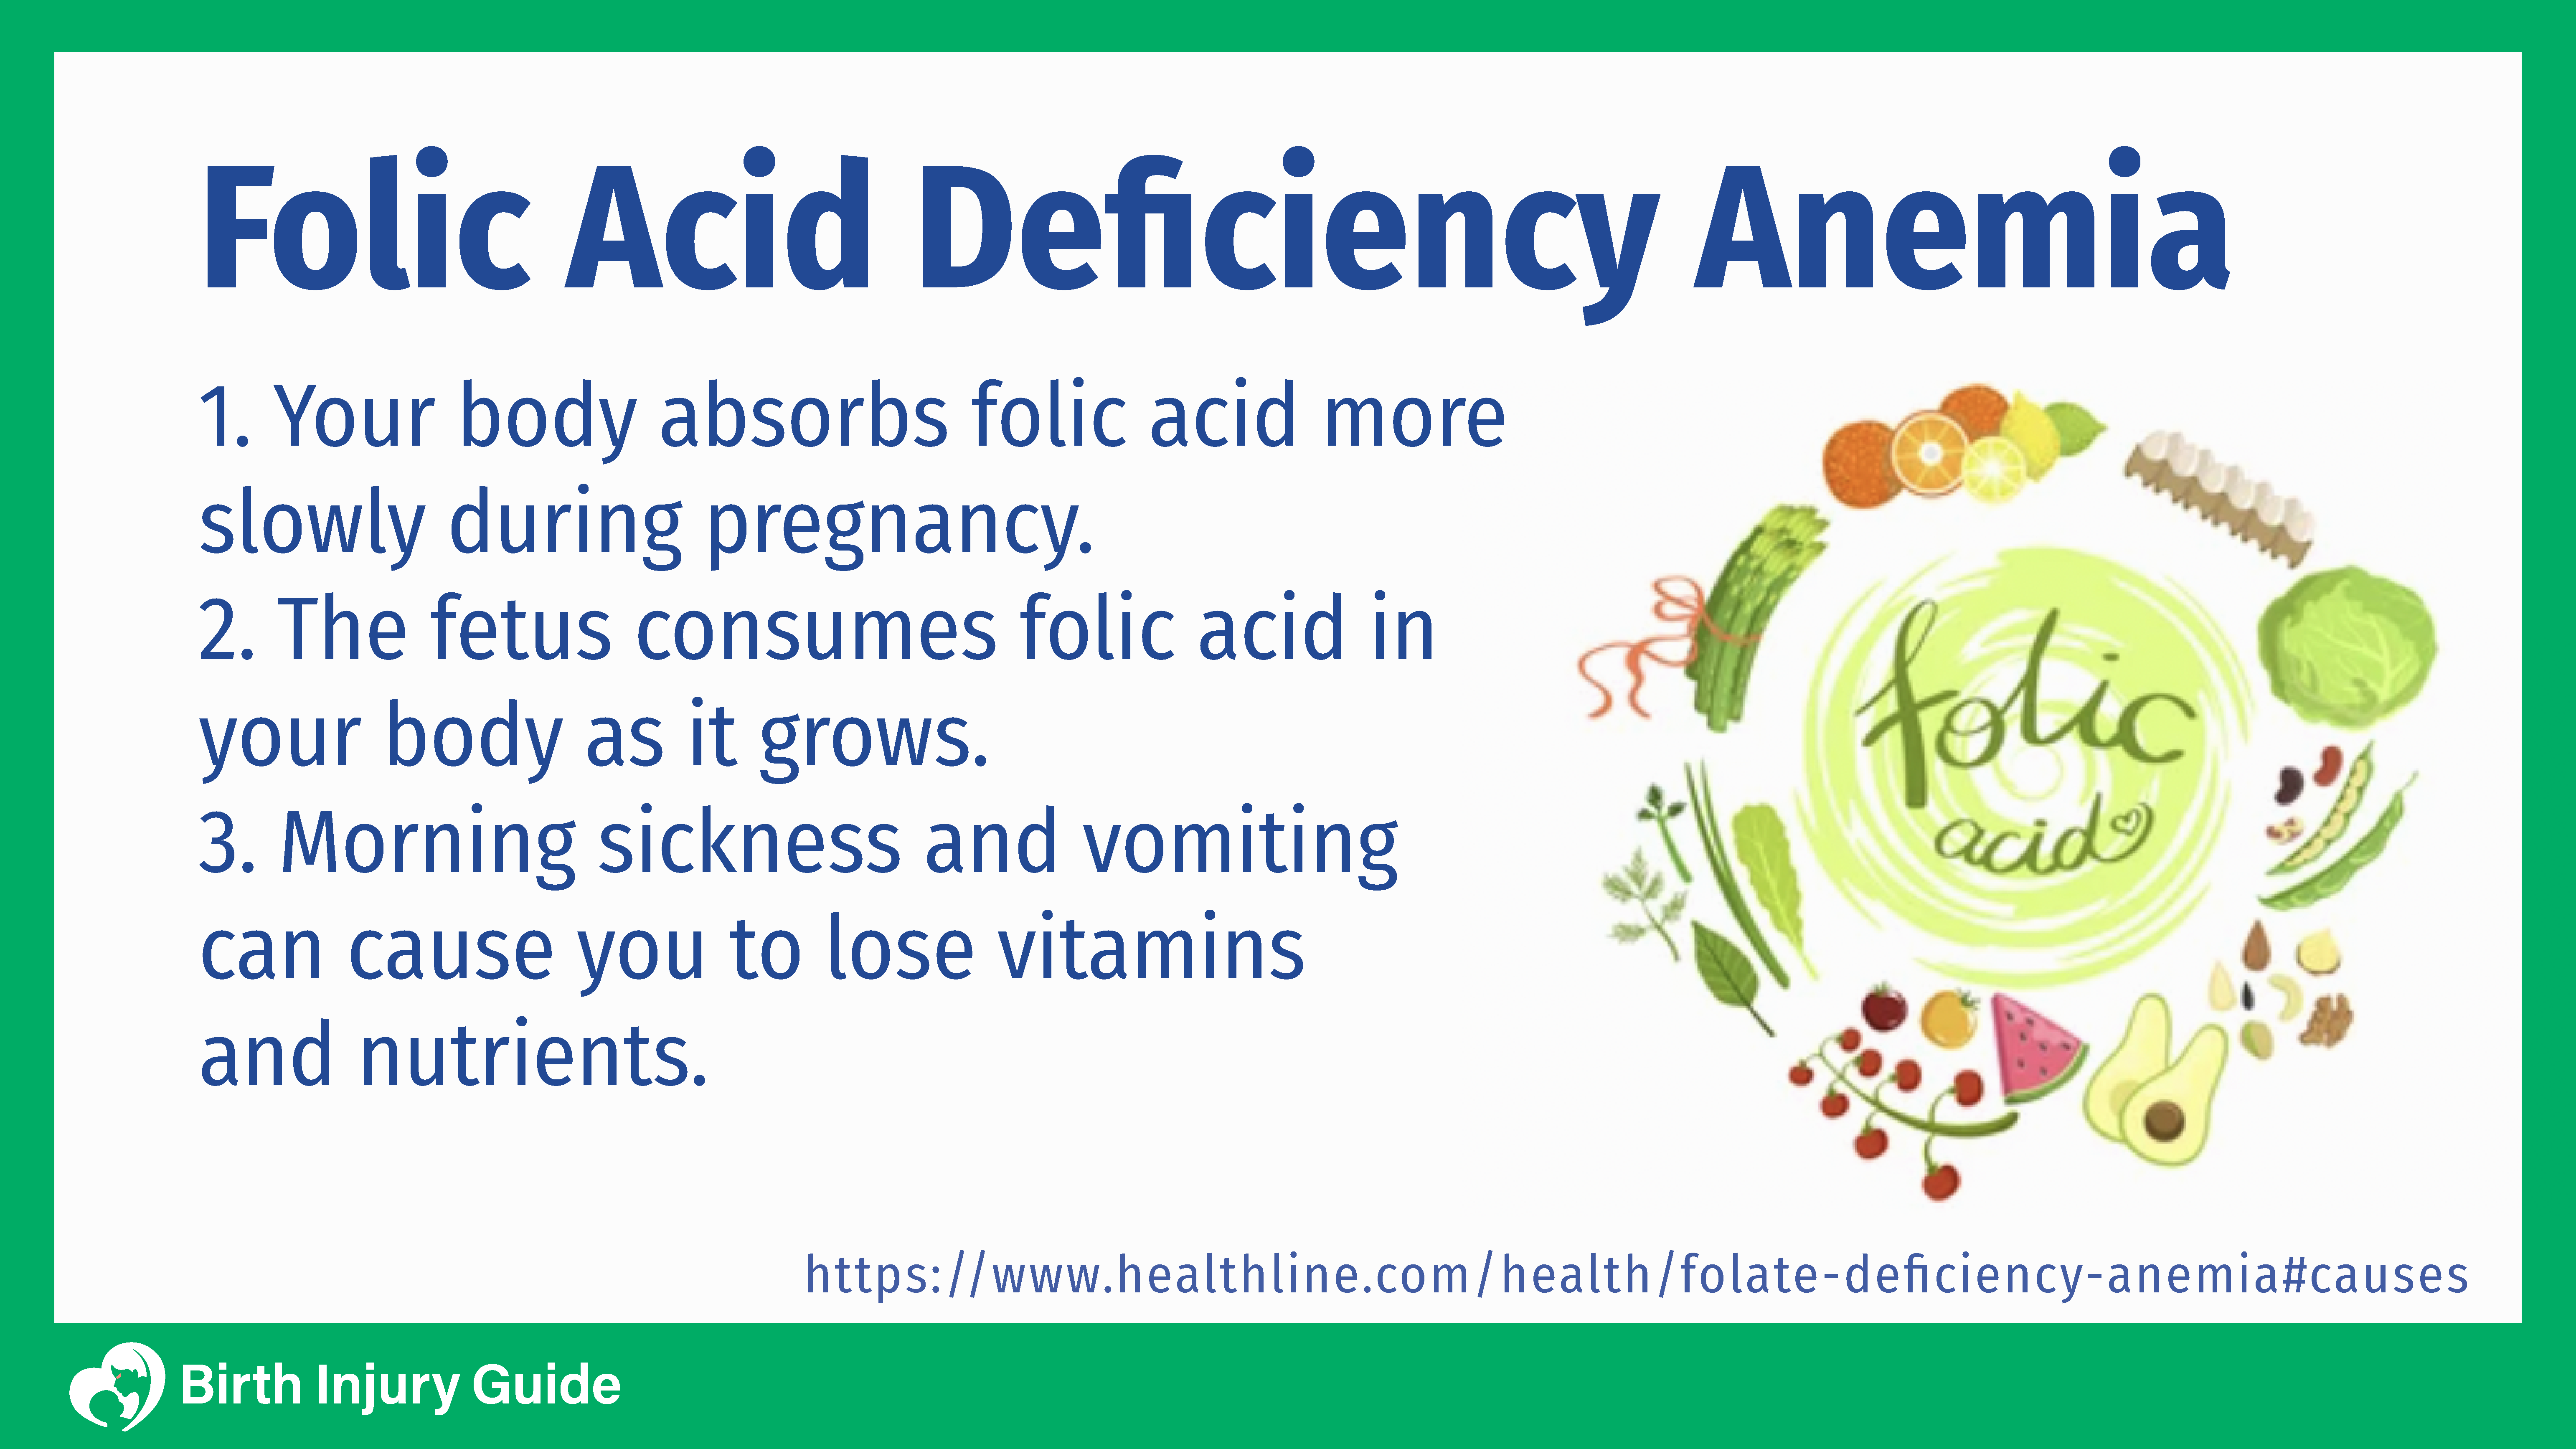 description of folic acid deficiency anemia